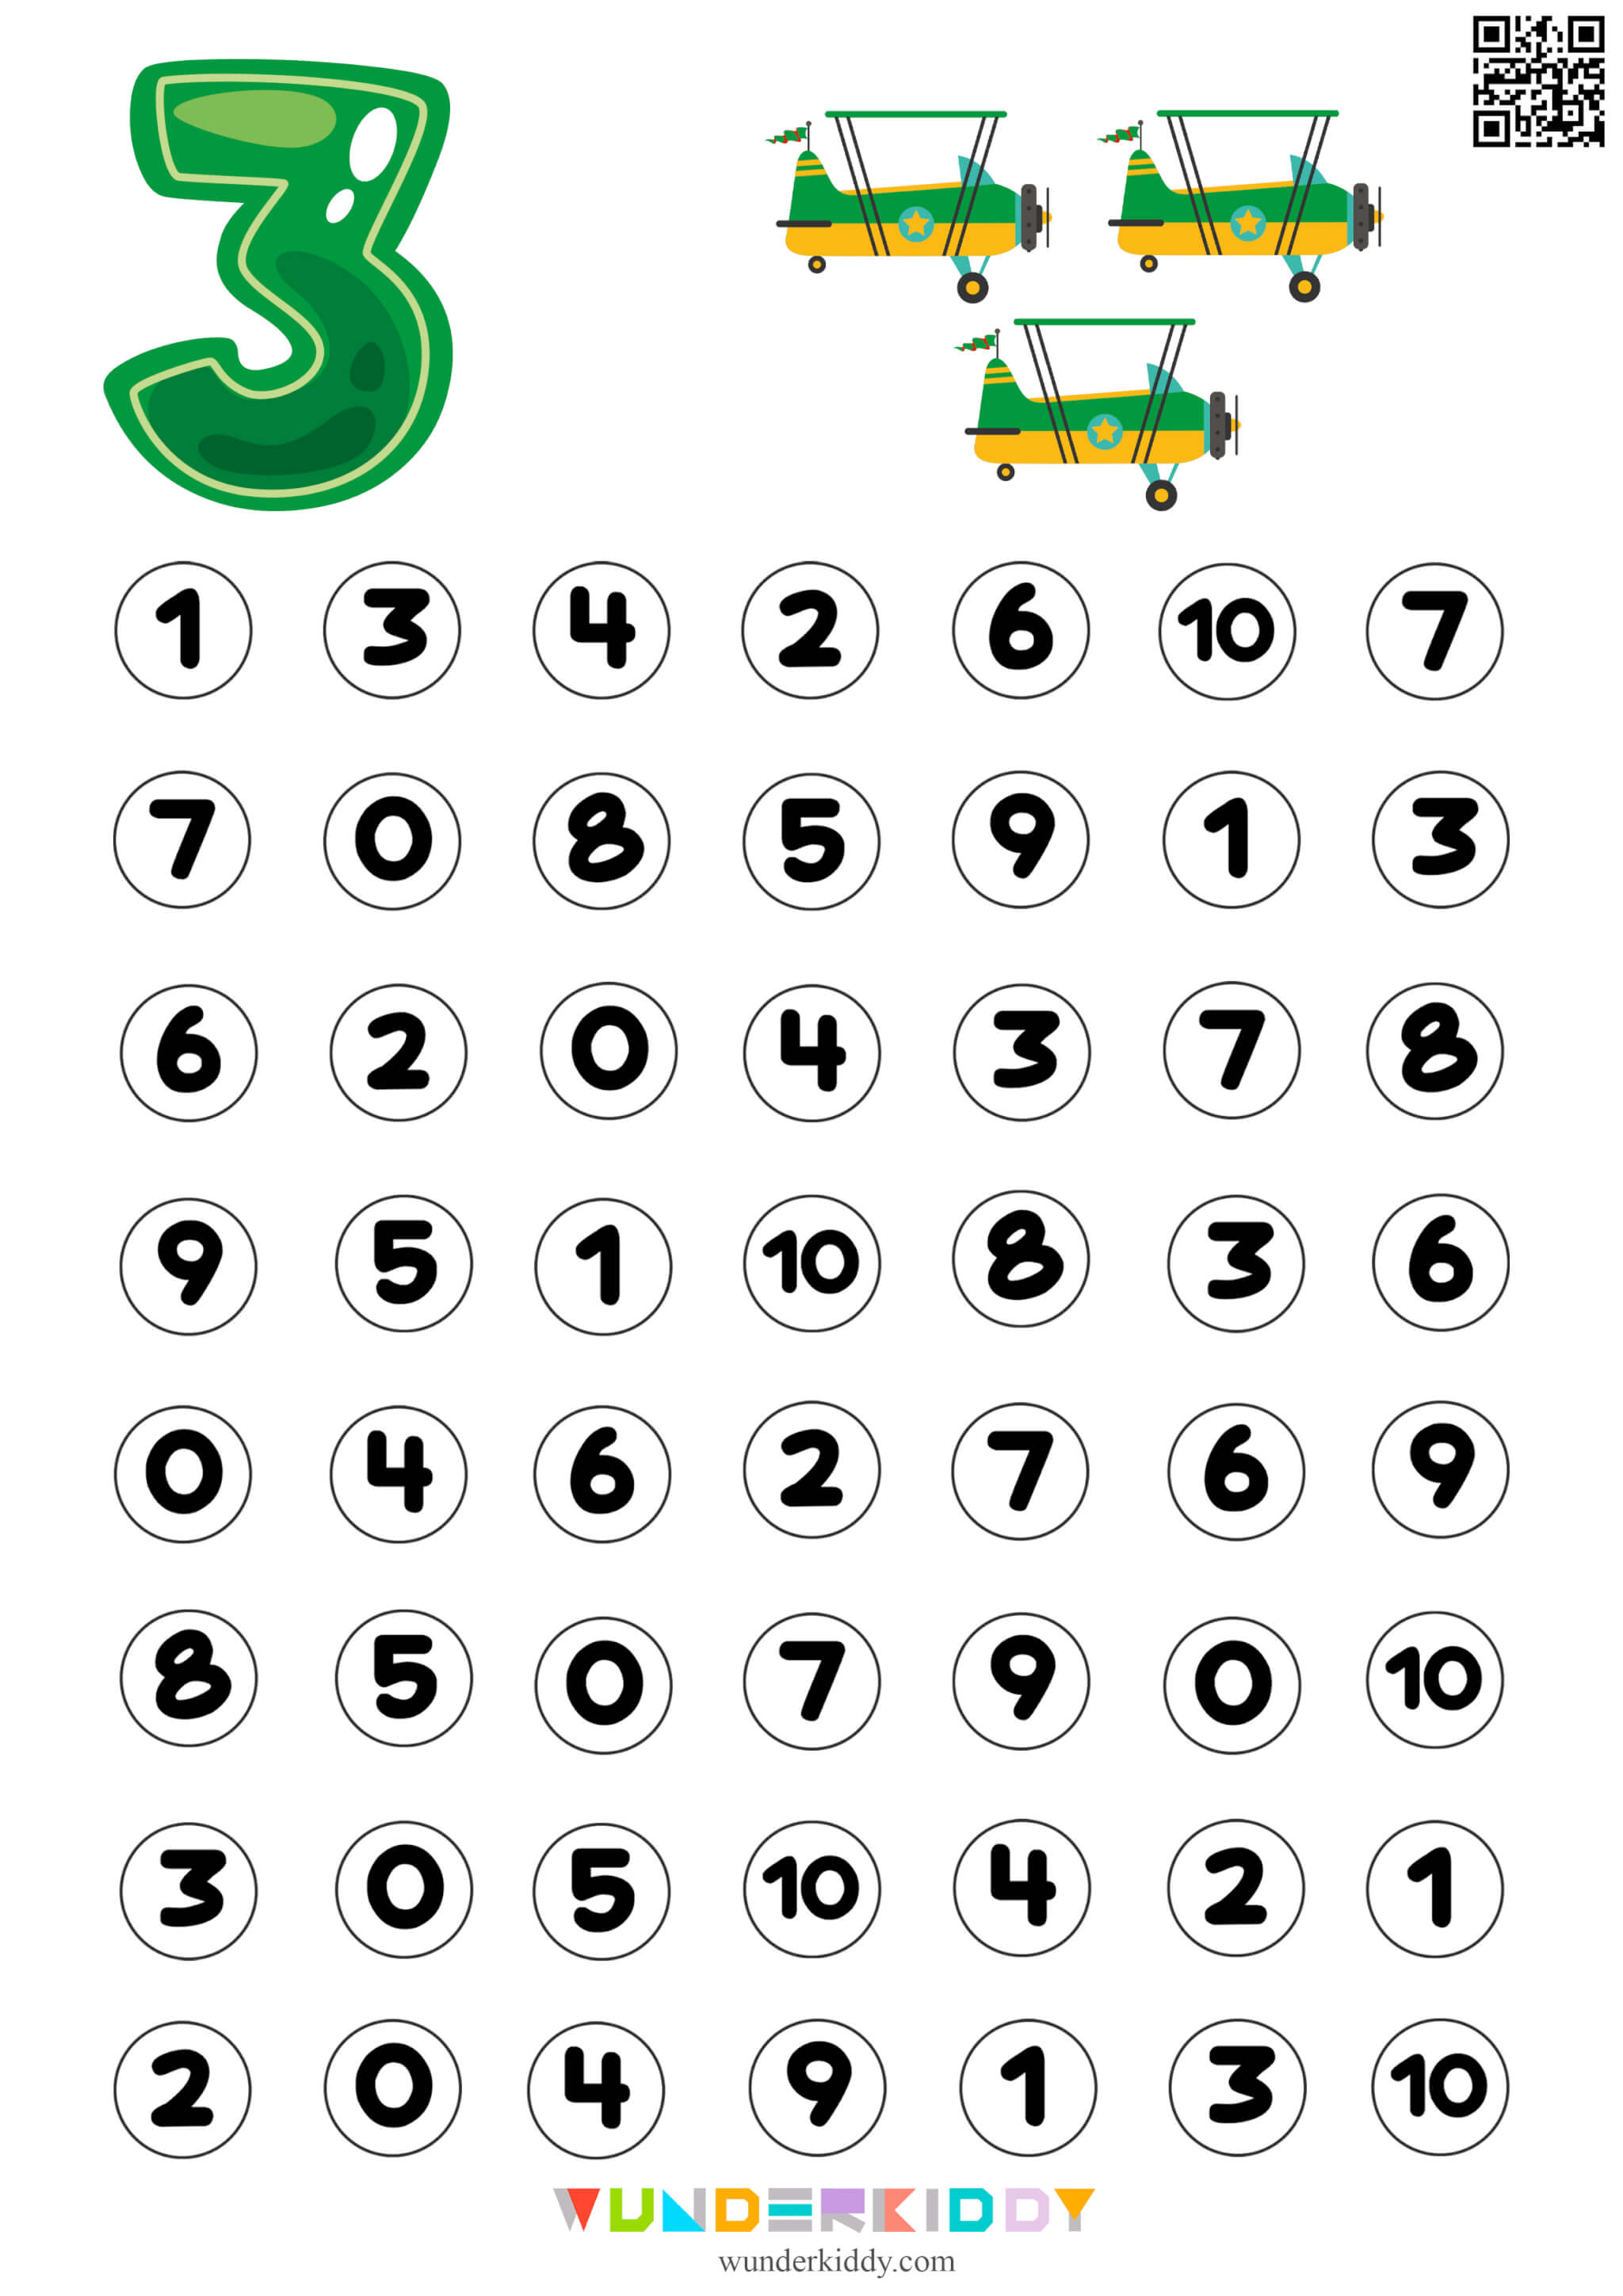 Printable Number Recognition Worksheet For Kindergarten